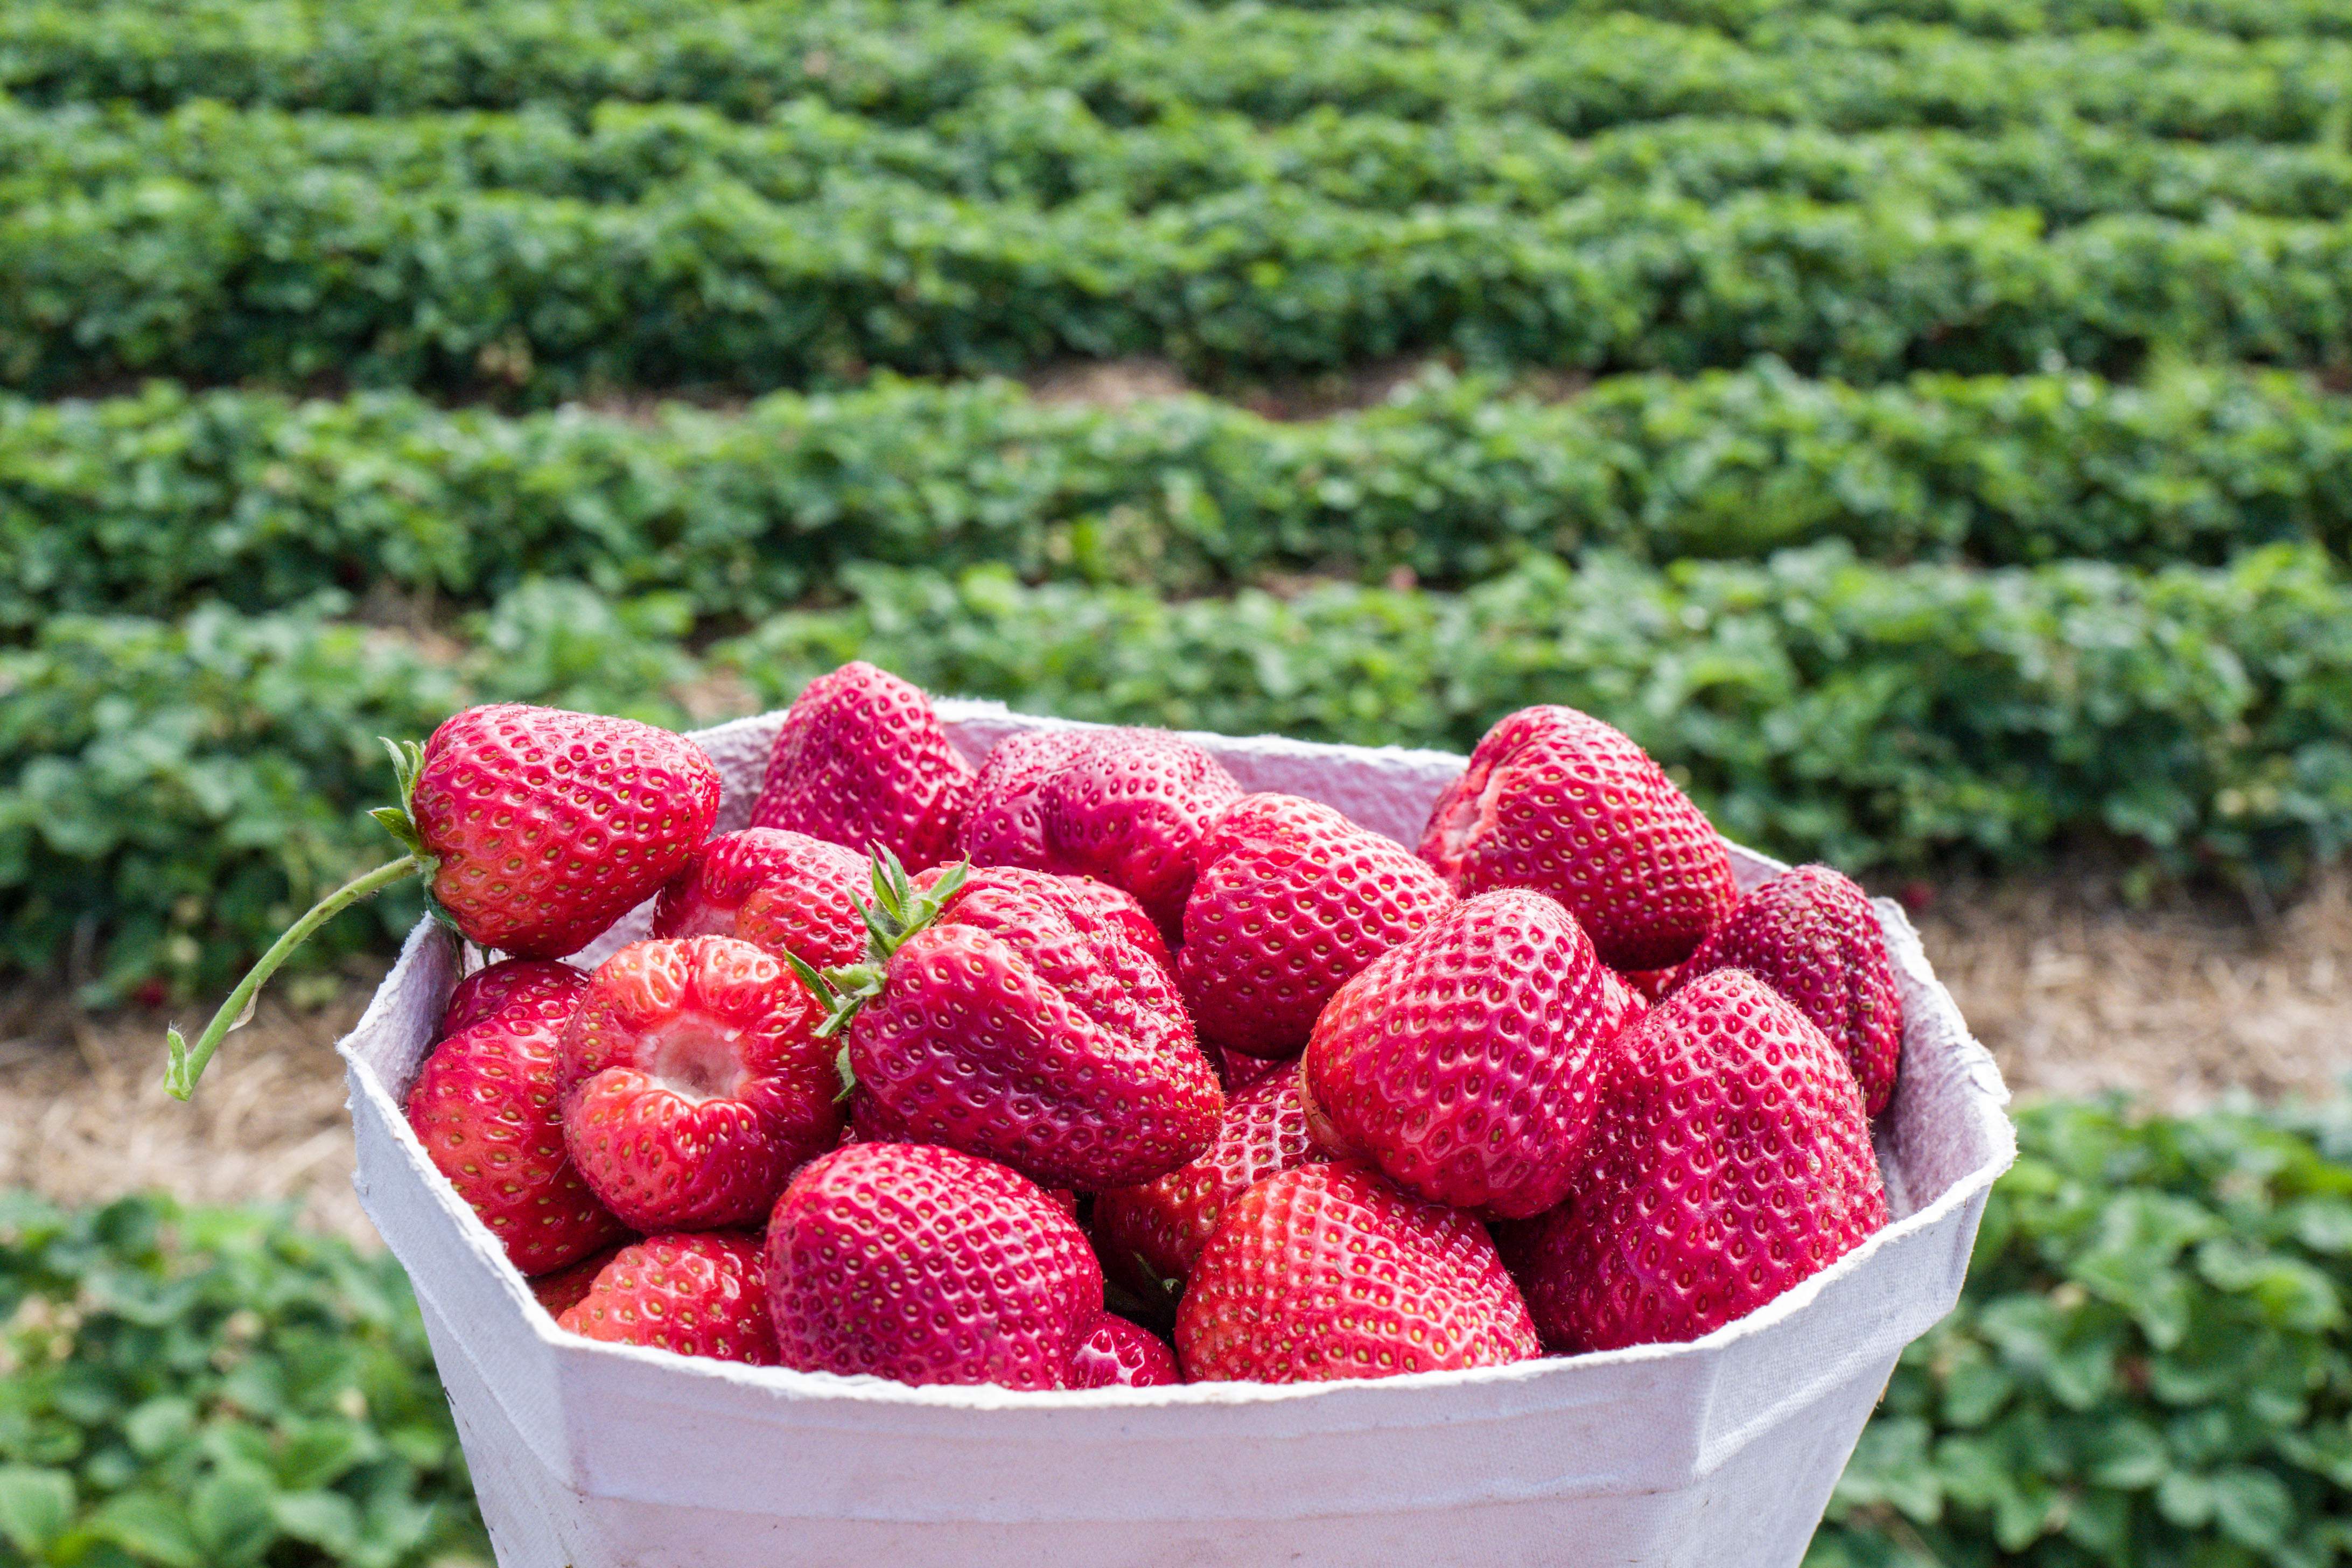 Das Bild zeigt eine weiße Schale voller frischer, roter Erdbeeren vor dem Hintergrund eines Erdbeerfeldes. Die Erdbeeren haben eine lebendige rote Farbe und sind mit kleinen gelben Samen bedeckt. Im Hintergrund ist ein großes Feld von Erdbeerpflanzen sichtbar. Das Licht ist natürlich und hebt die leuchtende Farbe der Erdbeeren hervor.